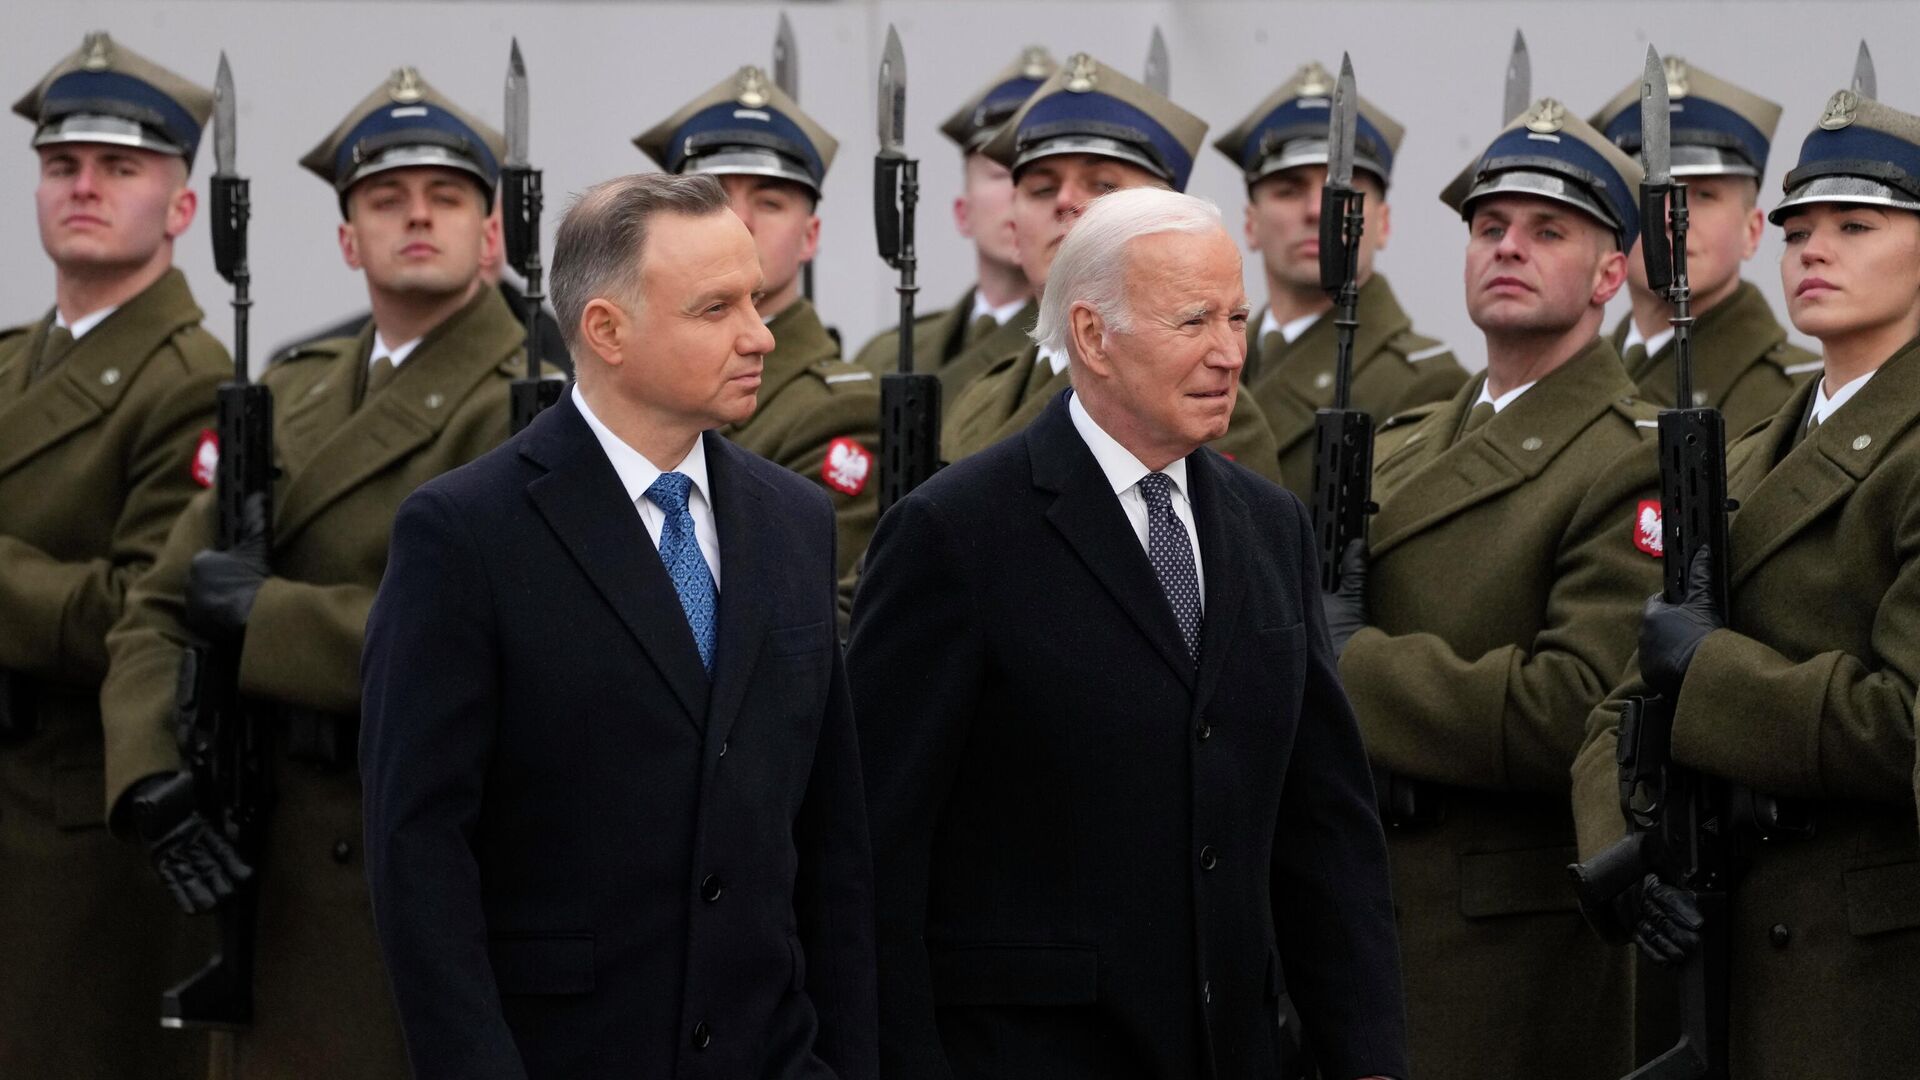 Президент Польши Анджей Дуда и президент США Джо Байден в Варшаве, Польша. 21 февраля 2023 года - ИноСМИ, 1920, 25.09.2023